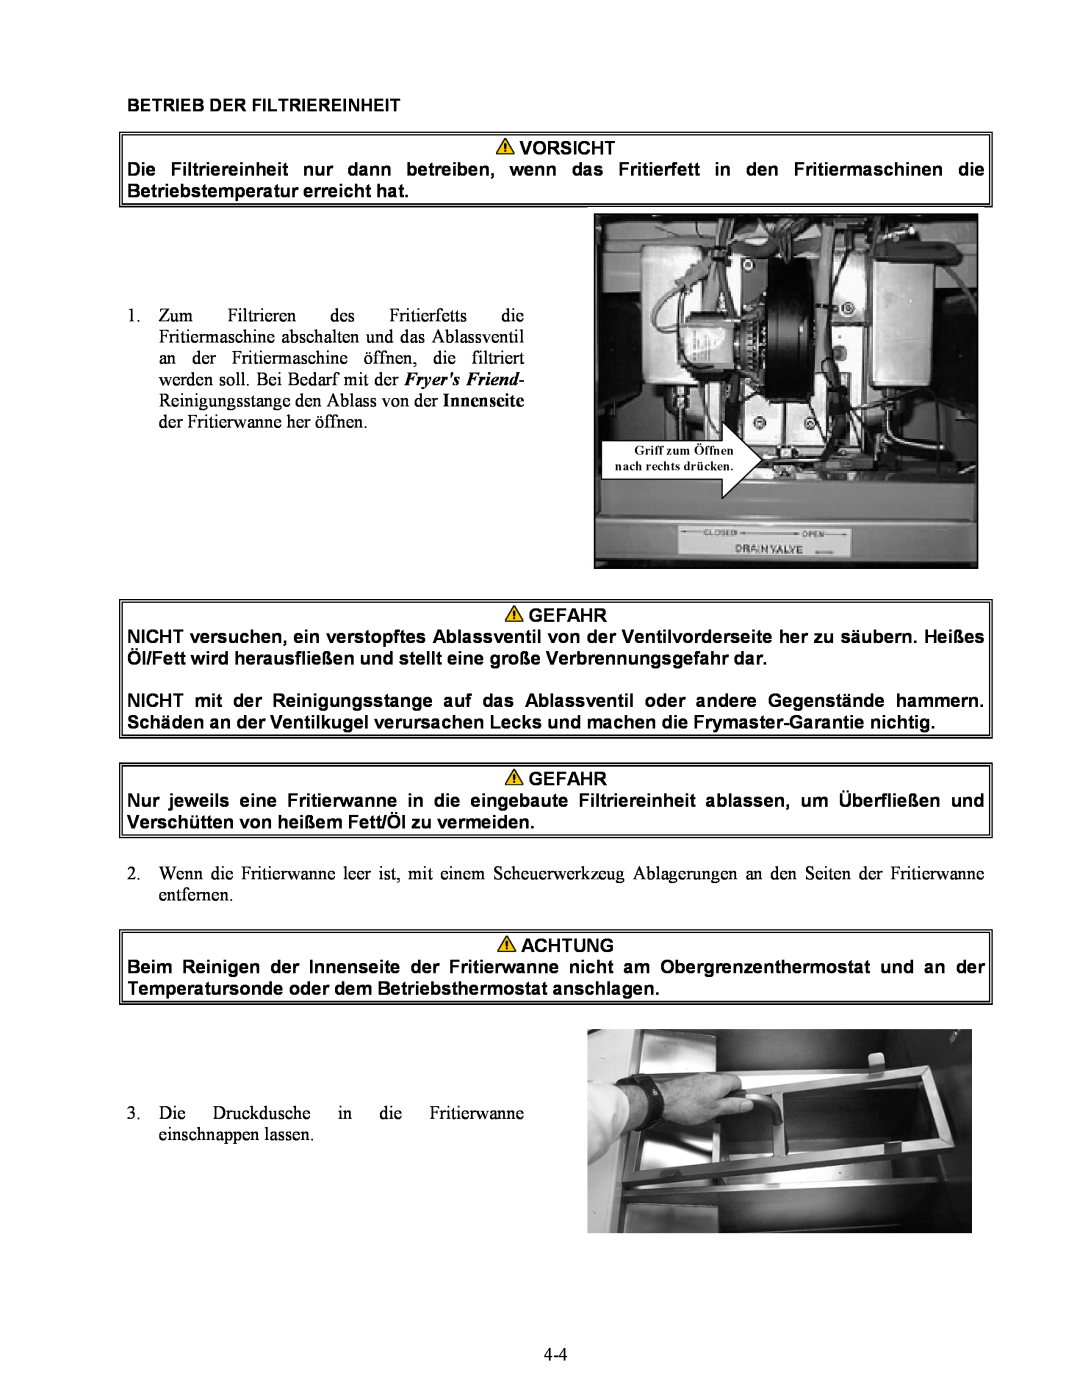 Frymaster Series H50 manual Vorsicht, Gefahr, Achtung 